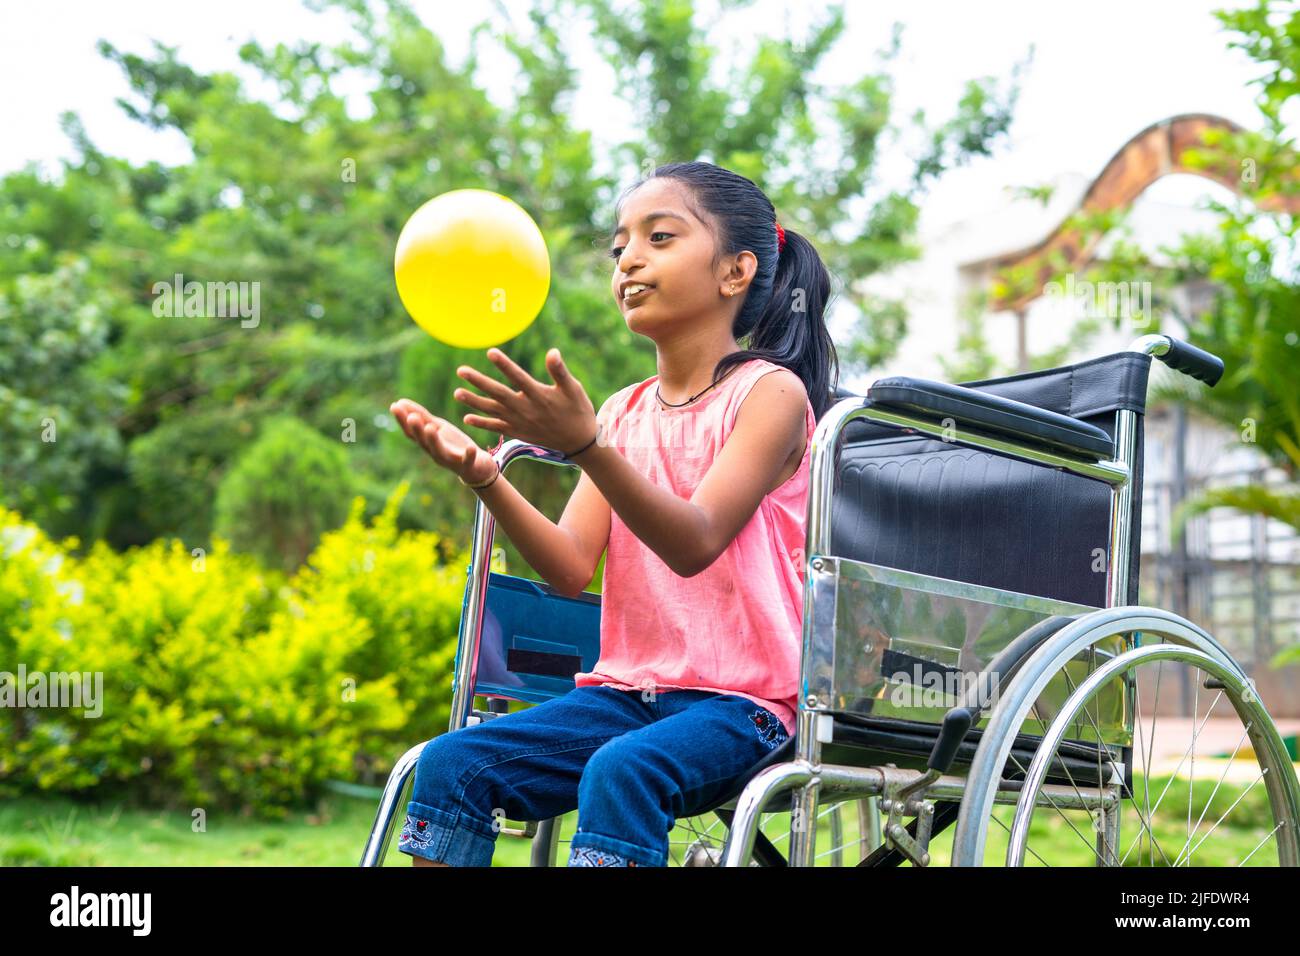 Concetto di felicità, libertà e divertimento mostrando sorridendo solo ragazza capretto con disabilità giocando con la palla mentre su sedia a rotelle al parco. Foto Stock